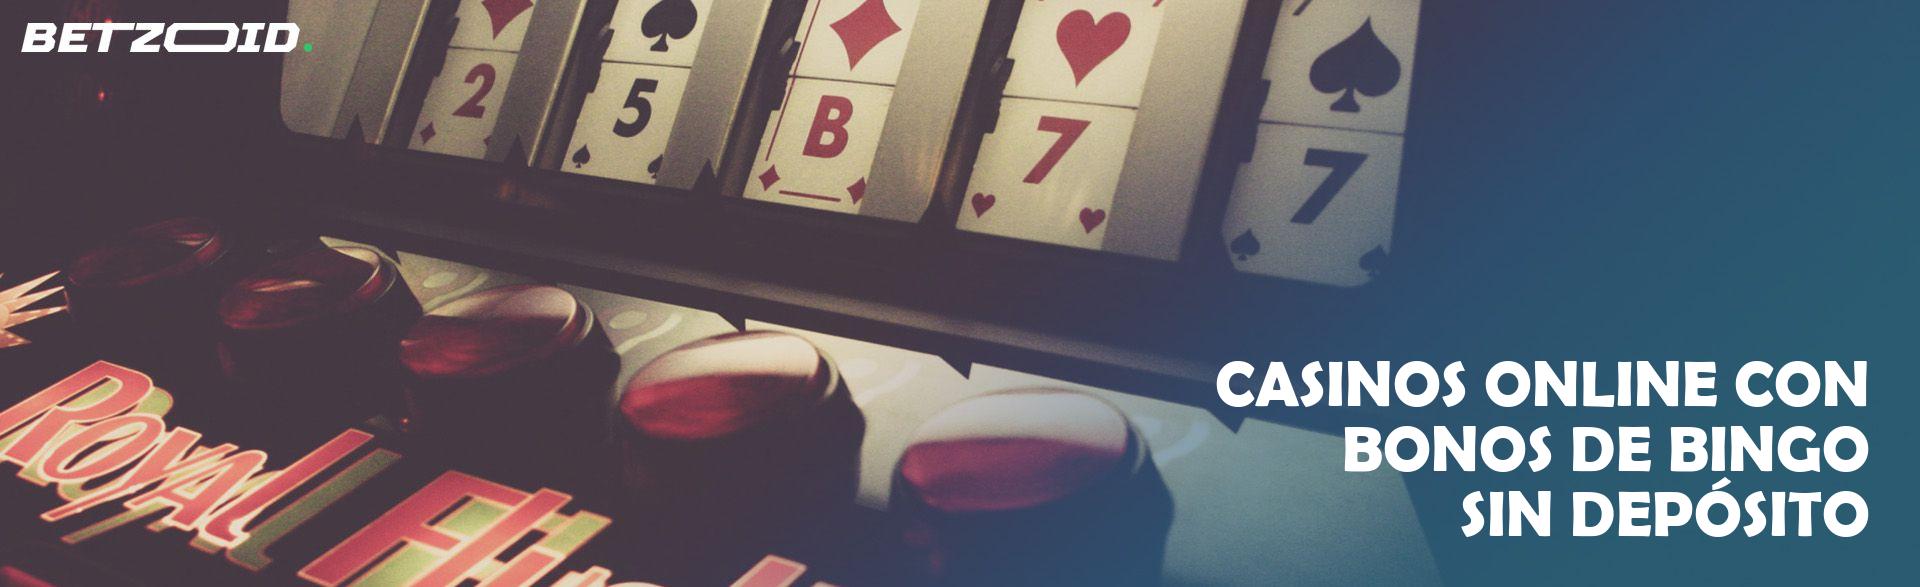 Casinos Online con Bonos de Bingo sin Depósito.